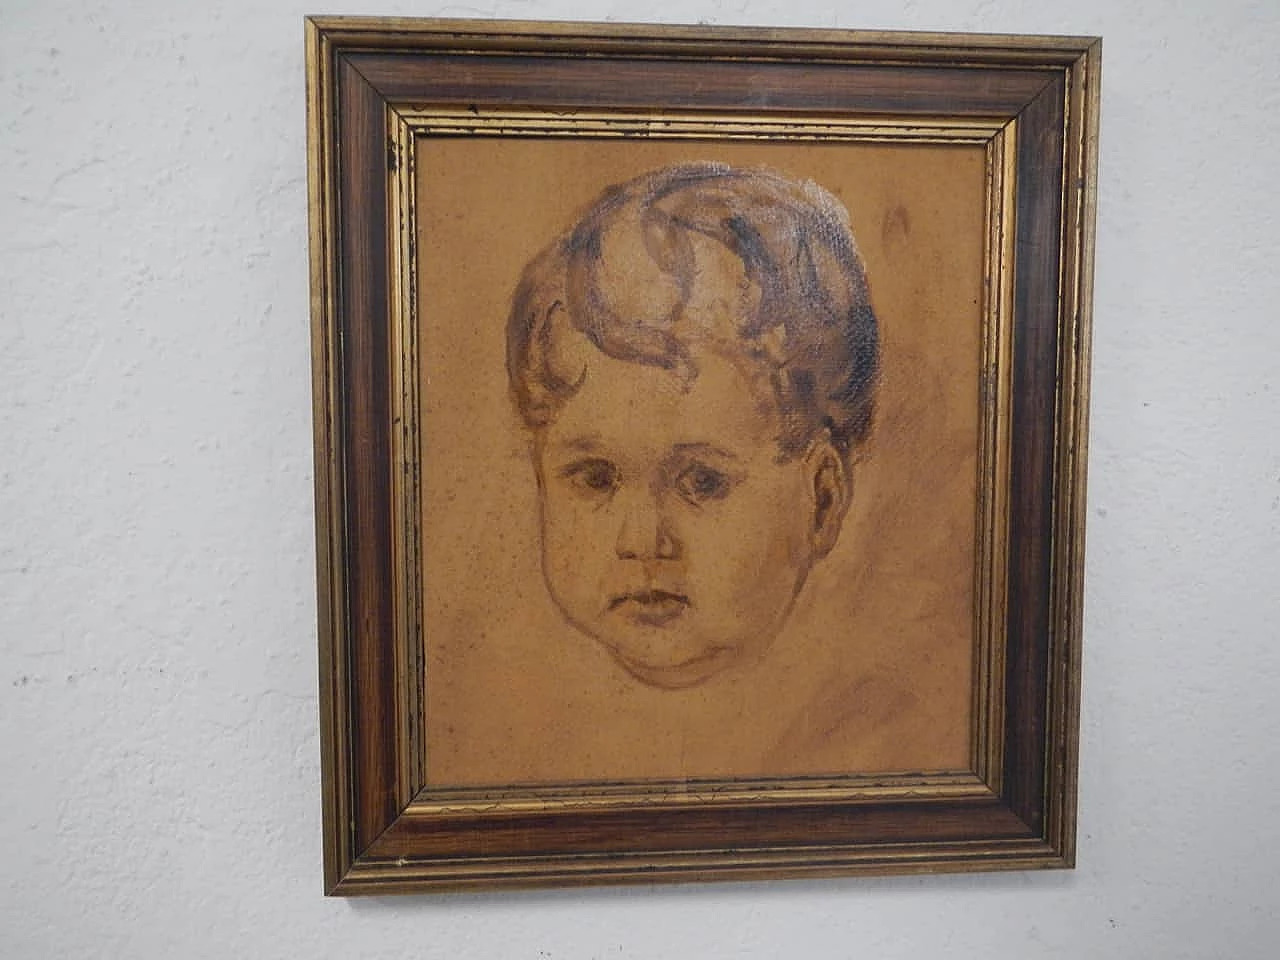 Mina Anselmi, Little boy, oil painting on plywood, 1940s 1